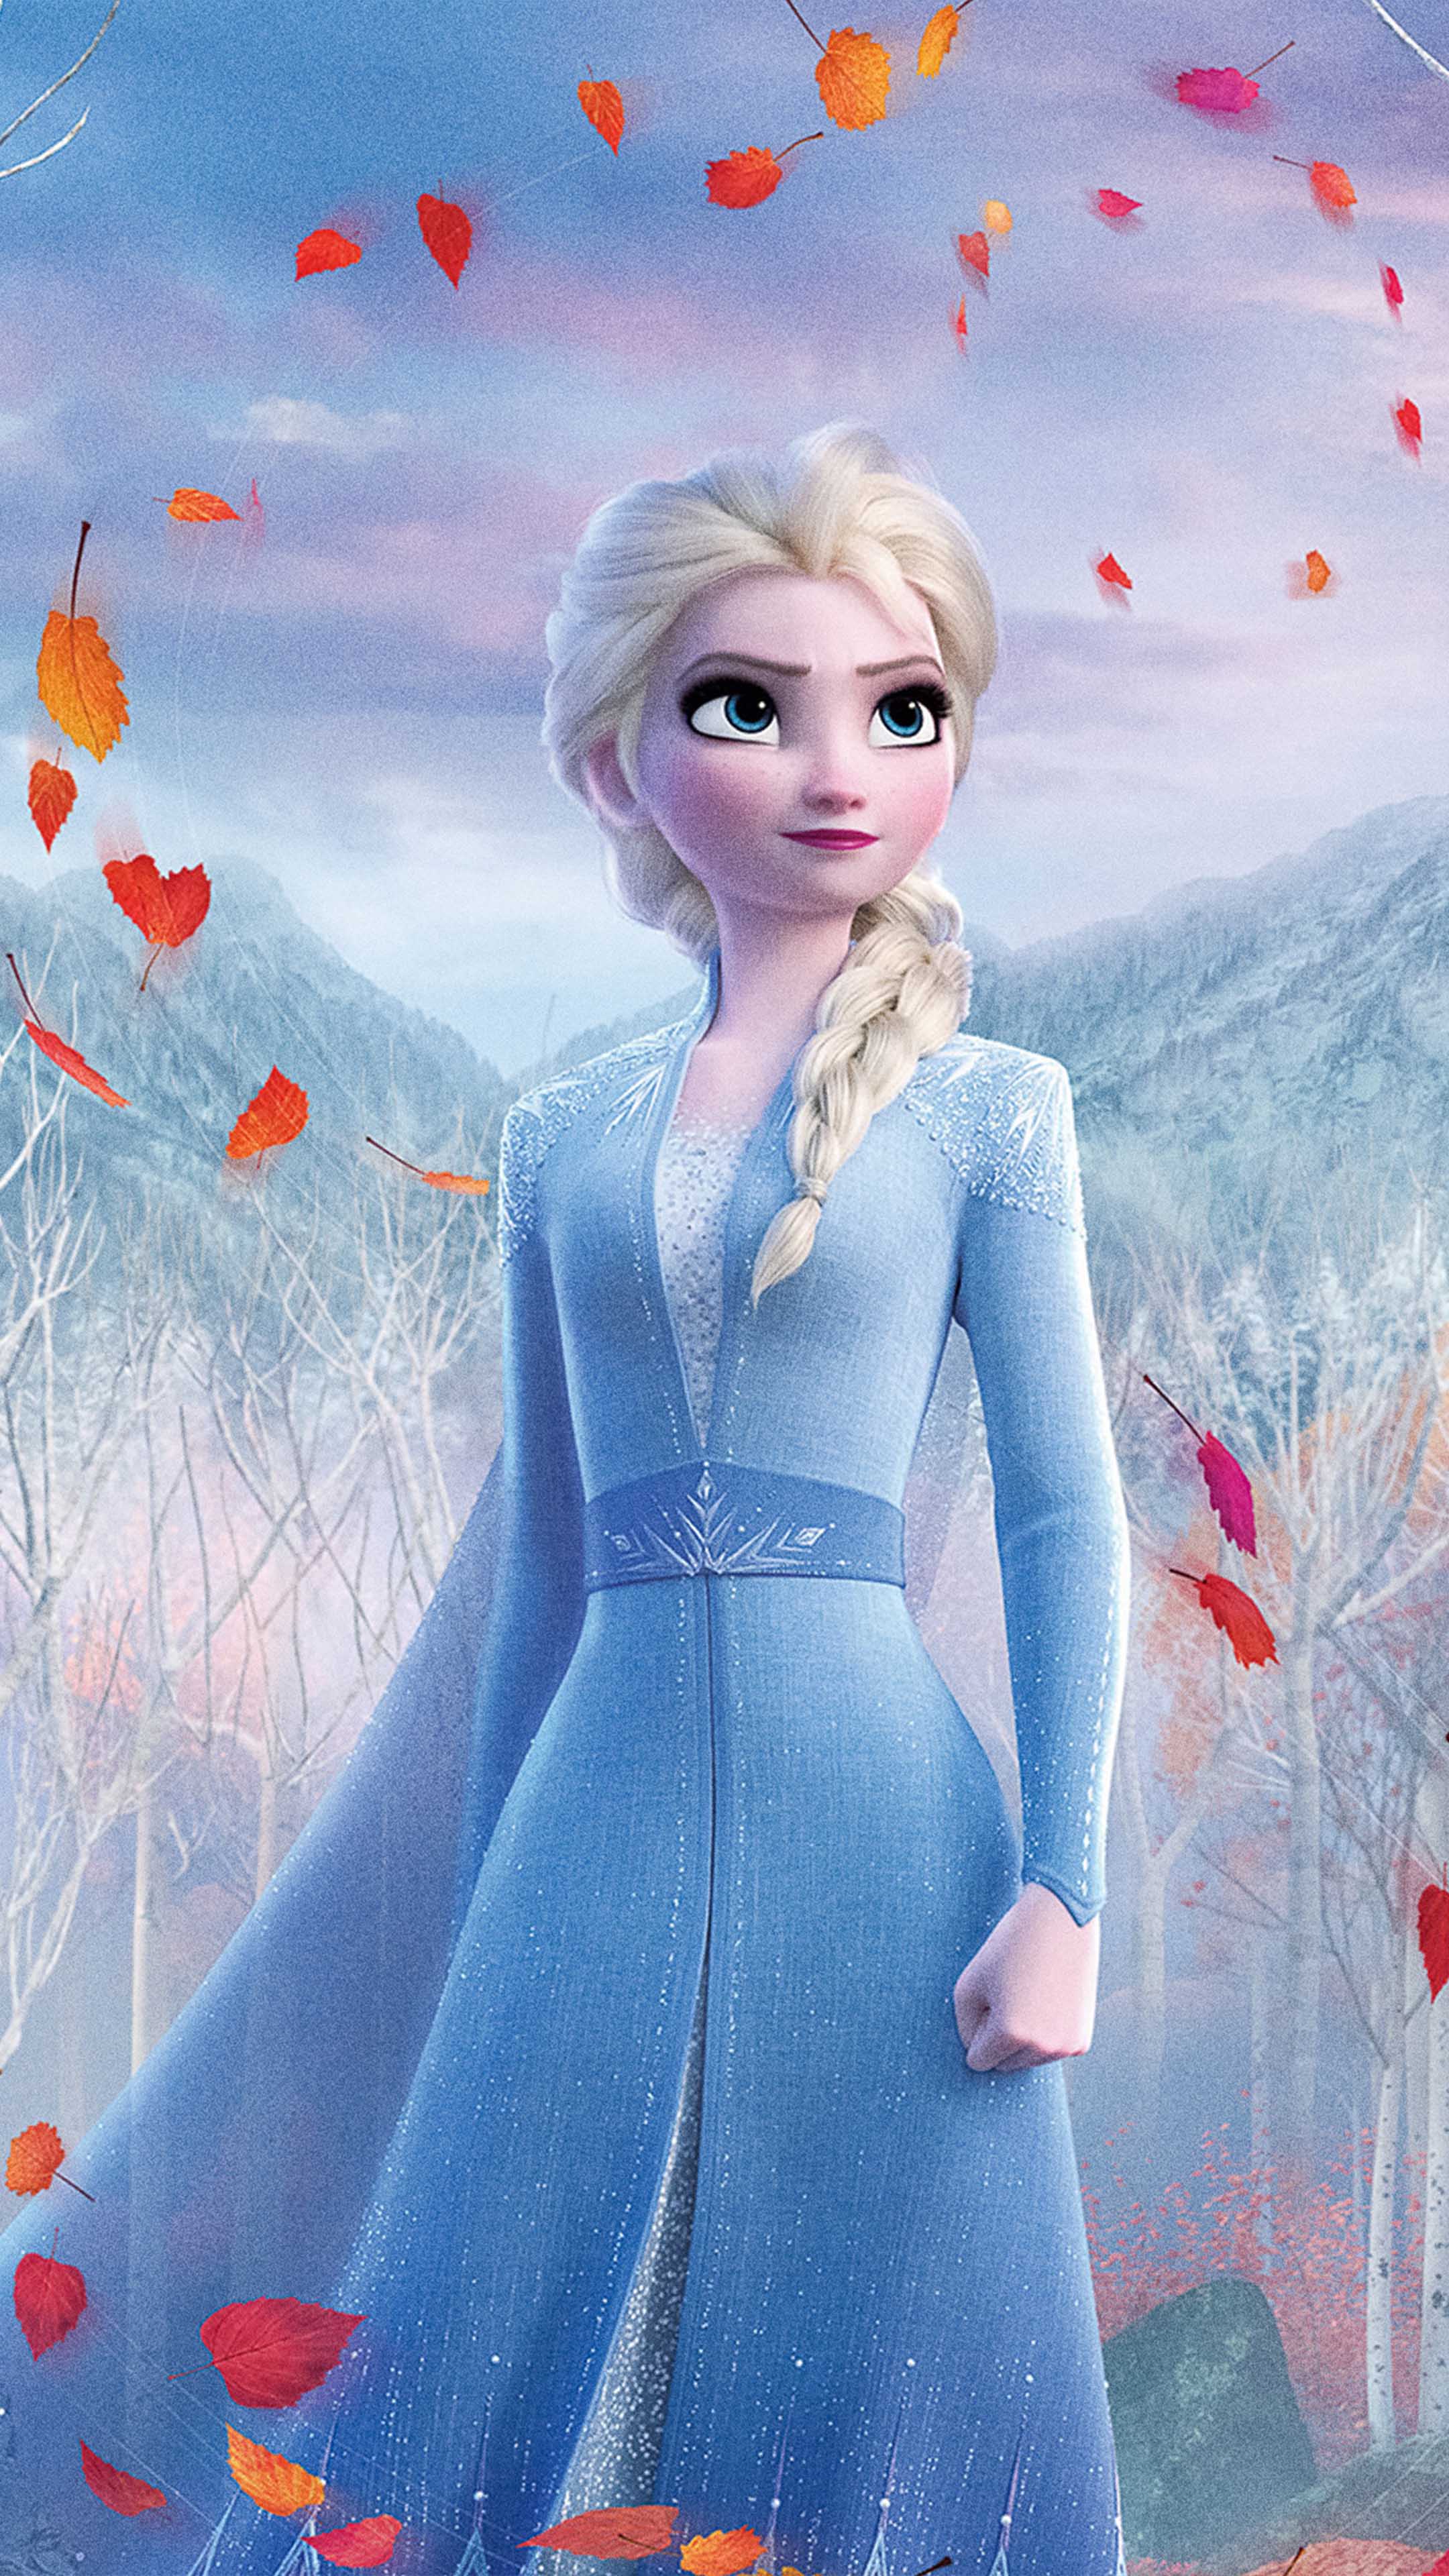 Frozen II download the new